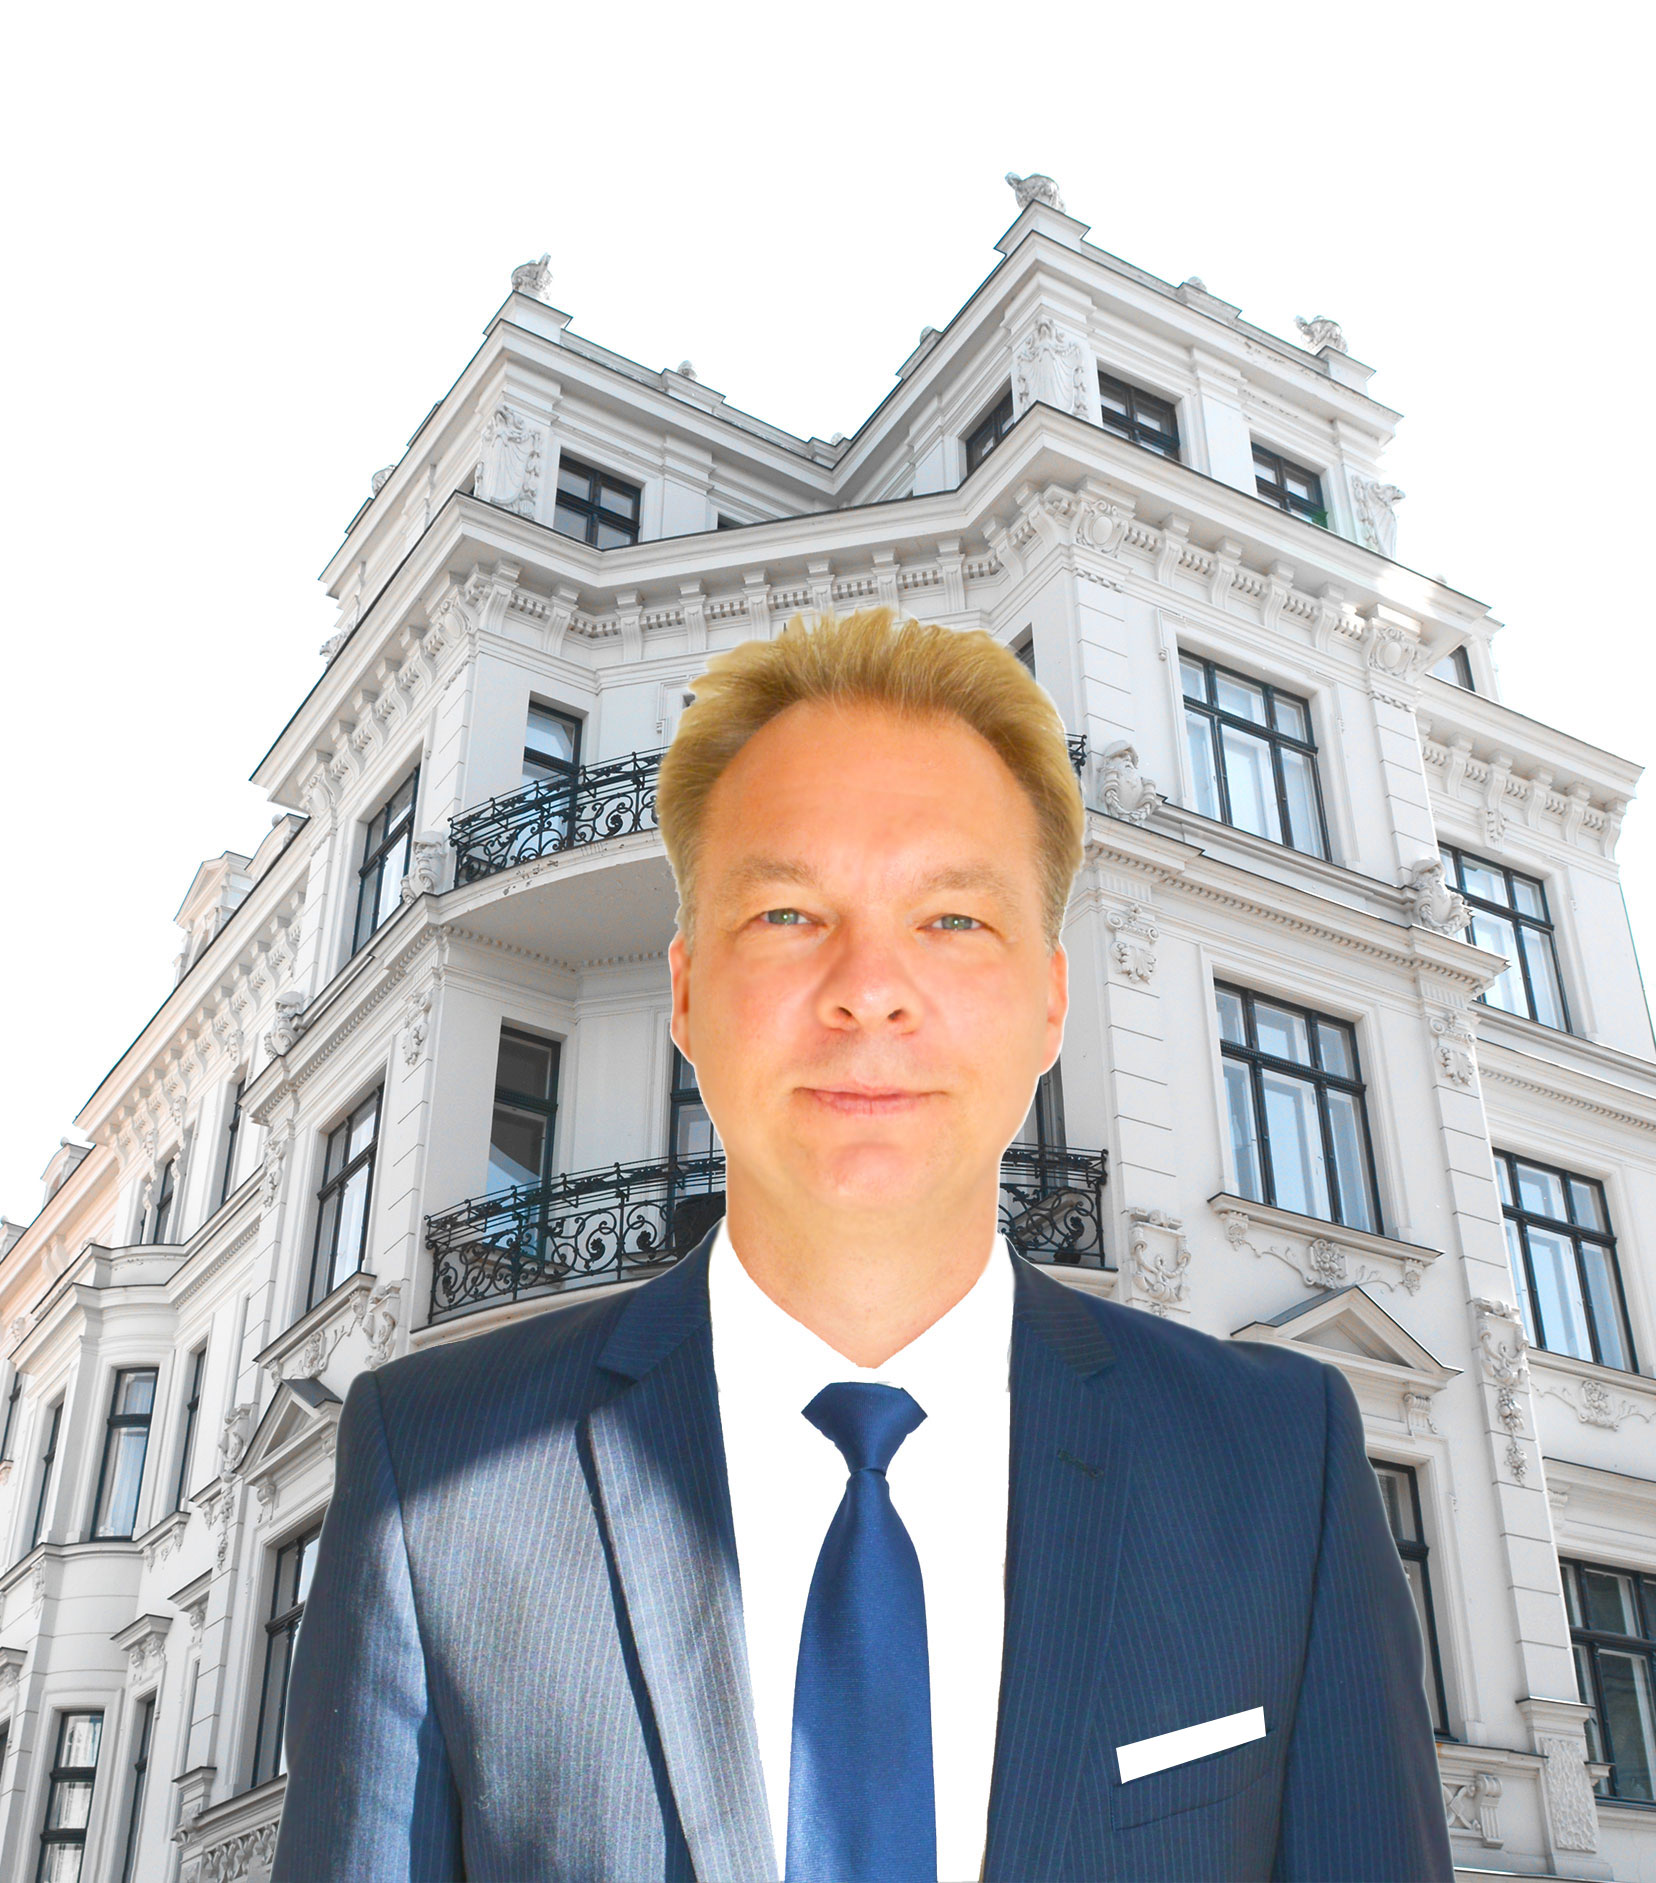 Dominic Wolf | Gepr. Immobilienökonom (DFI) - Ihr Immobilienmakler für Travemünde / Lübeck / Ostholstein / Ostsee